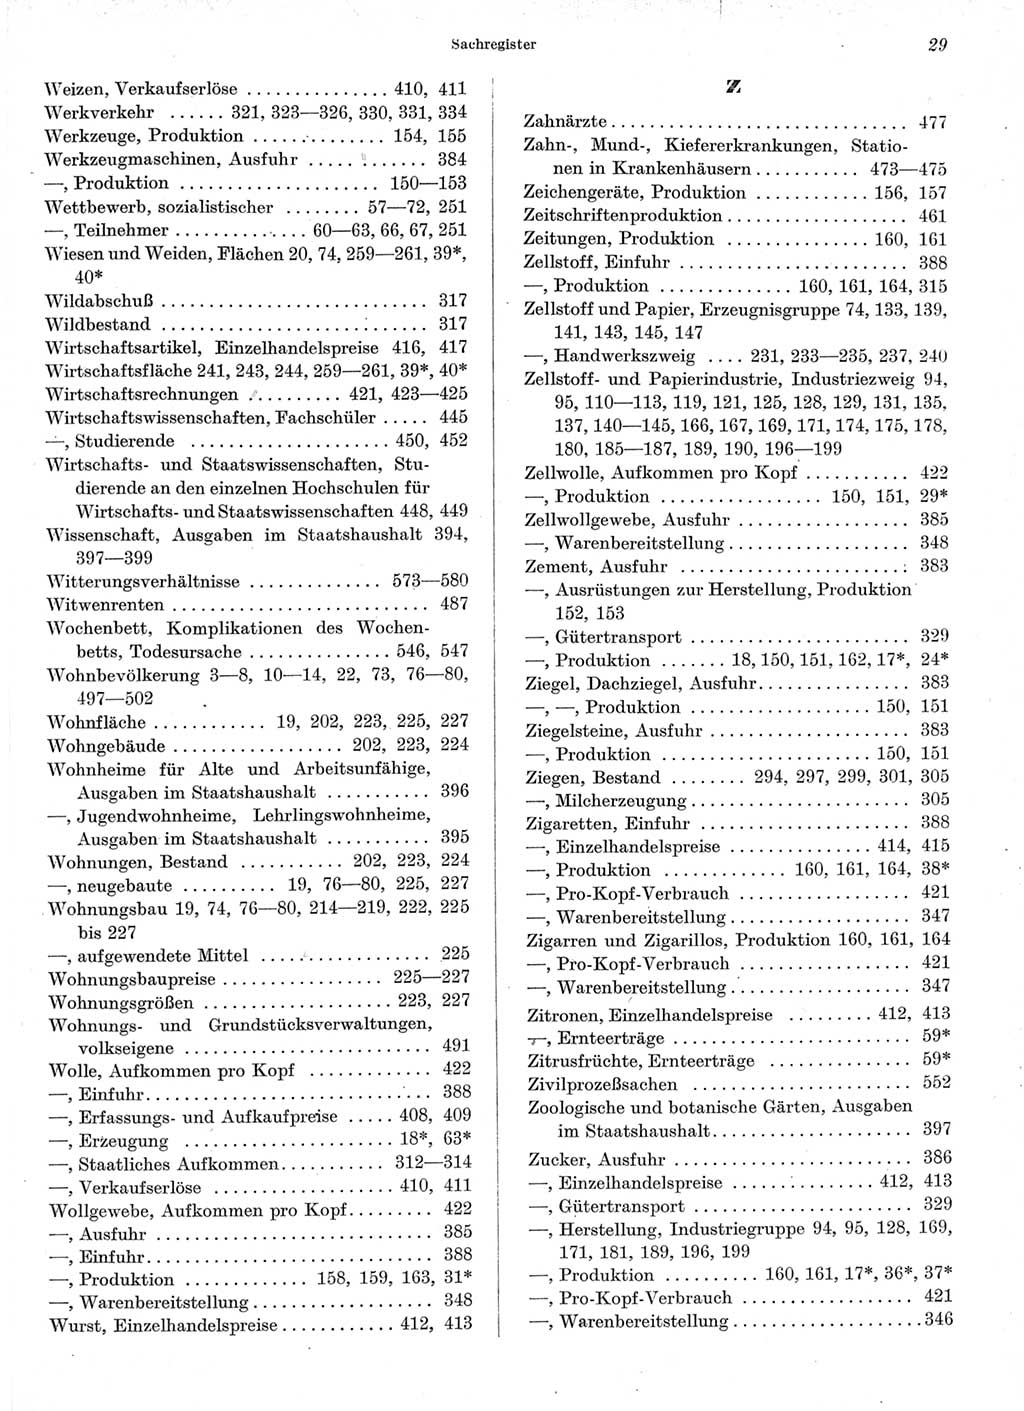 Statistisches Jahrbuch der Deutschen Demokratischen Republik (DDR) 1964, Seite 29 (Stat. Jb. DDR 1964, S. 29)